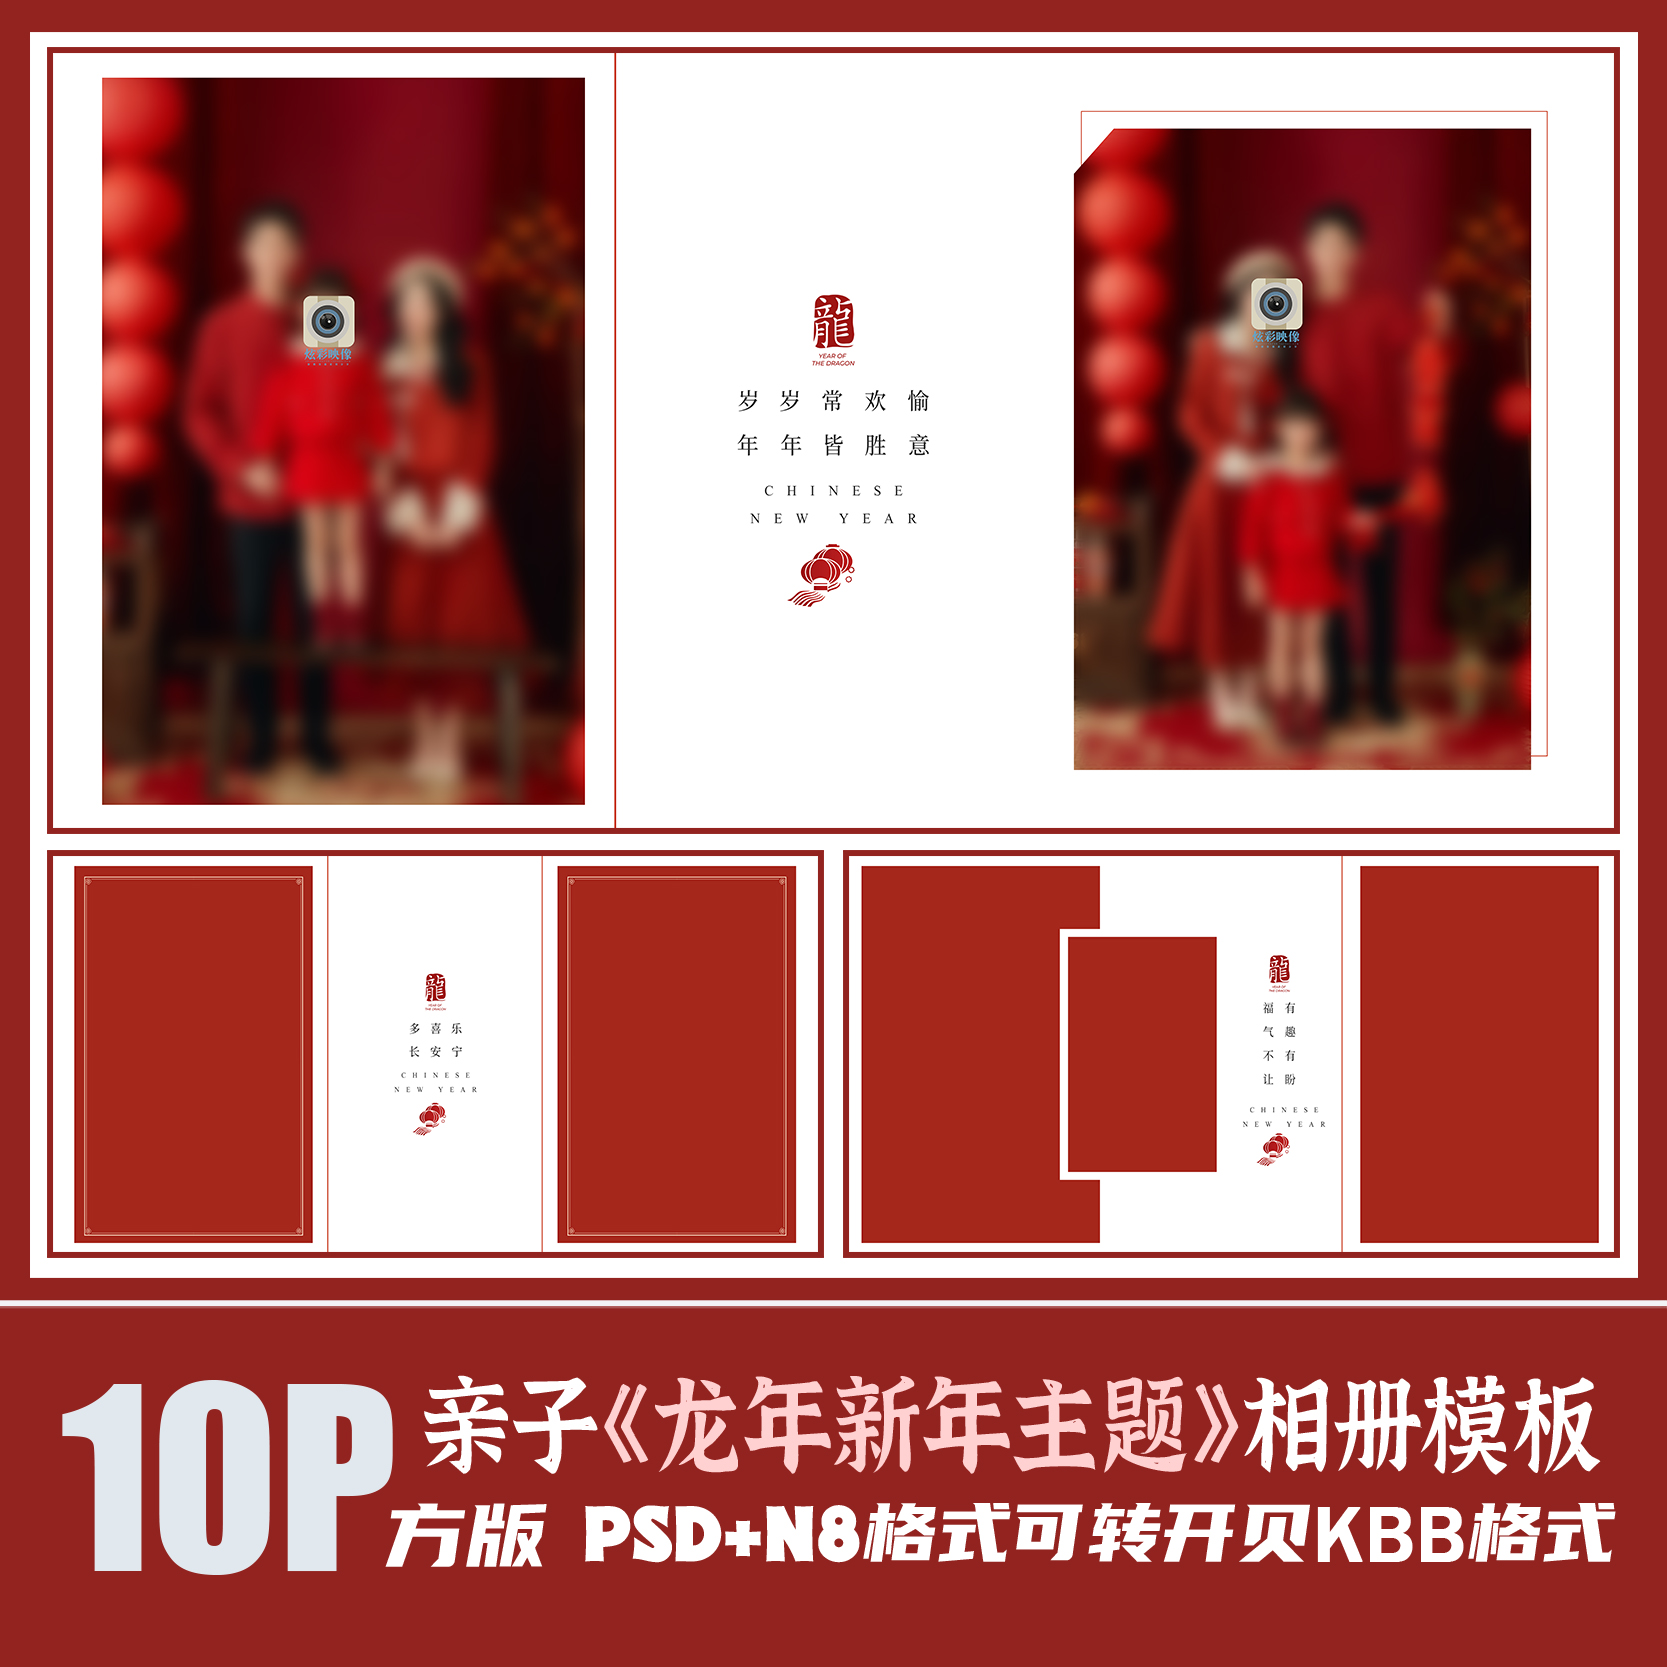 Q78全家福亲子红毛衣相册PSD模板春节新年喜摄影楼排版PS素材方版